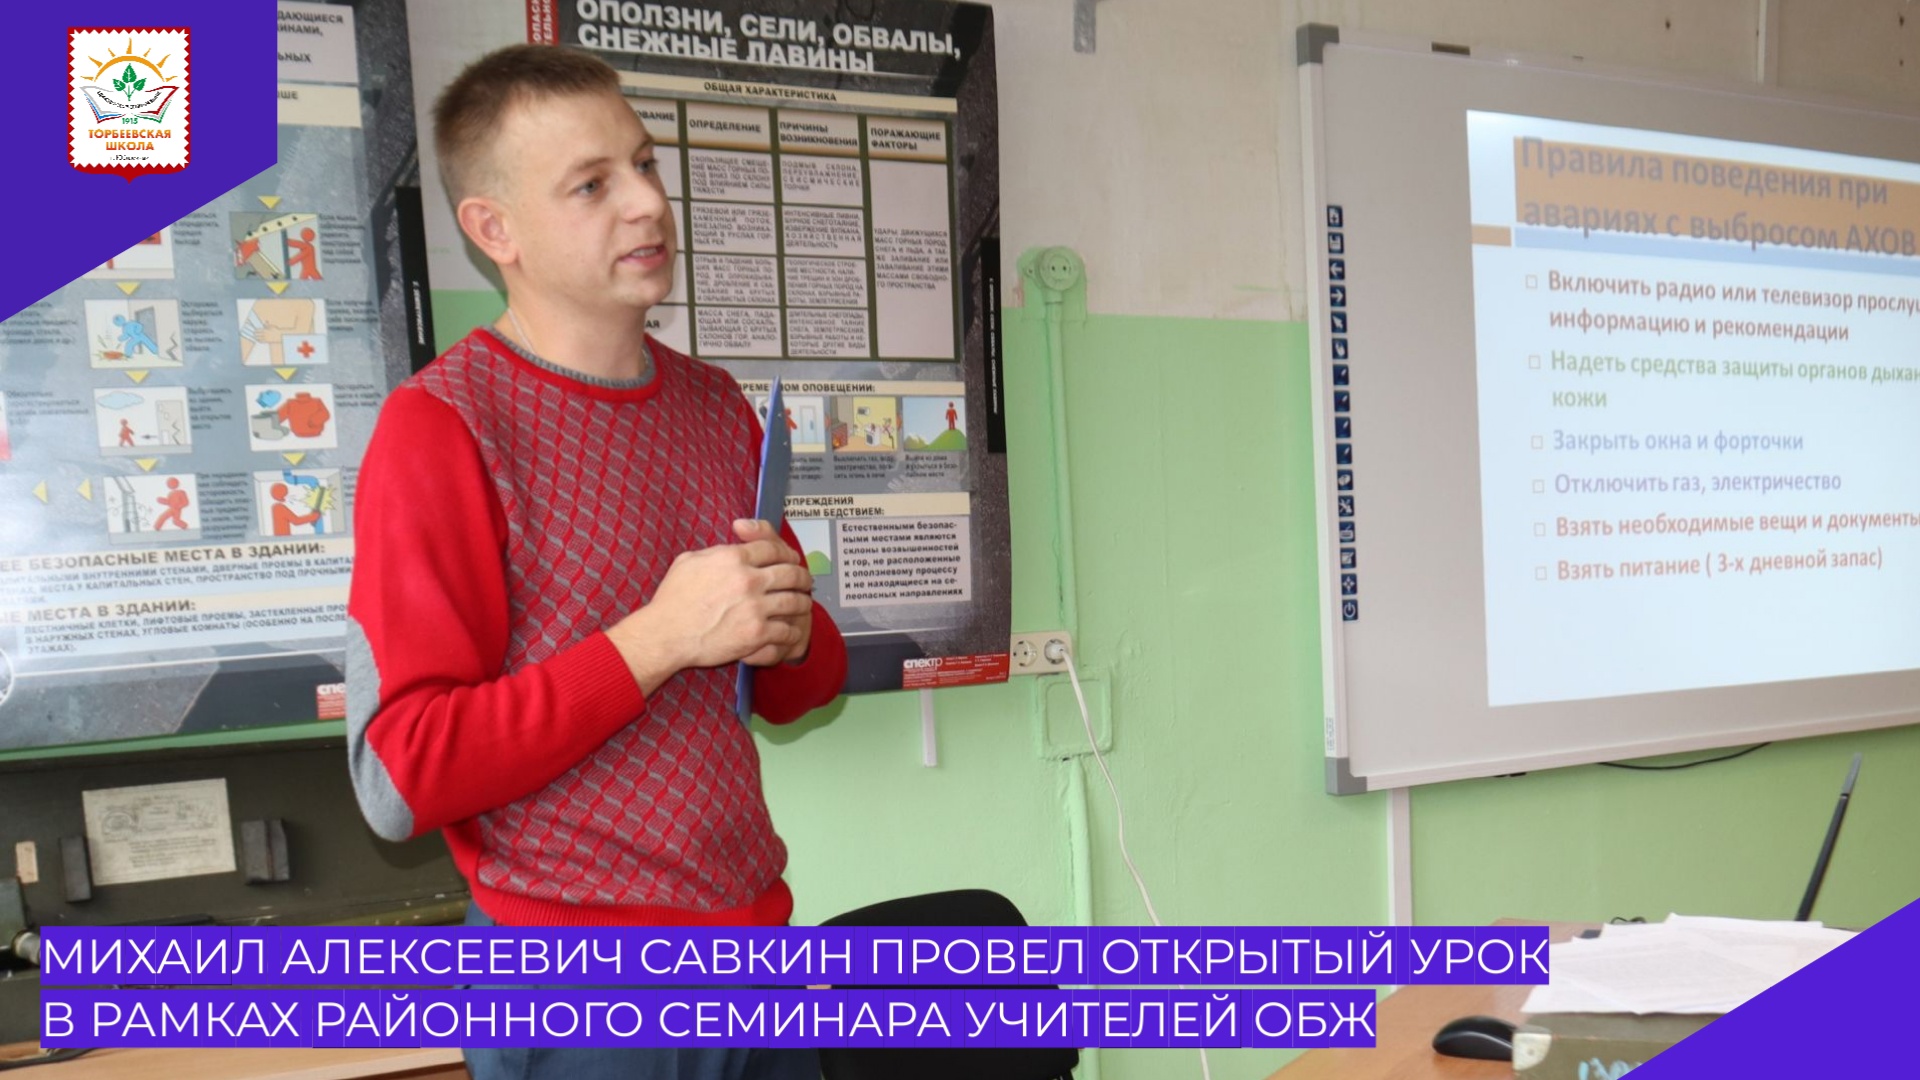 М.А. Савкин провел открытый урок в рамках районного семинара учителей ОБЖ.